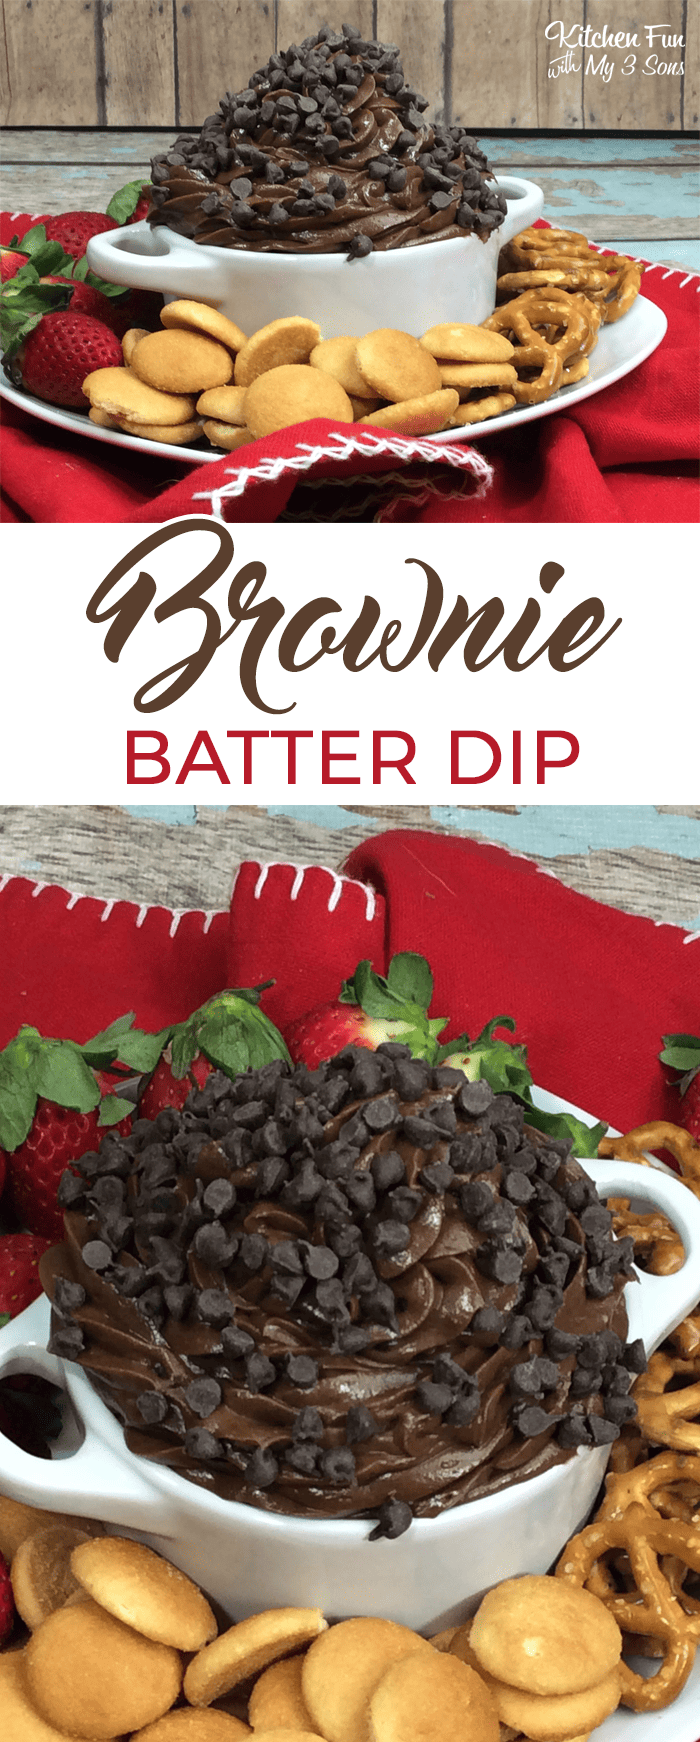 Brownie Batter Dip